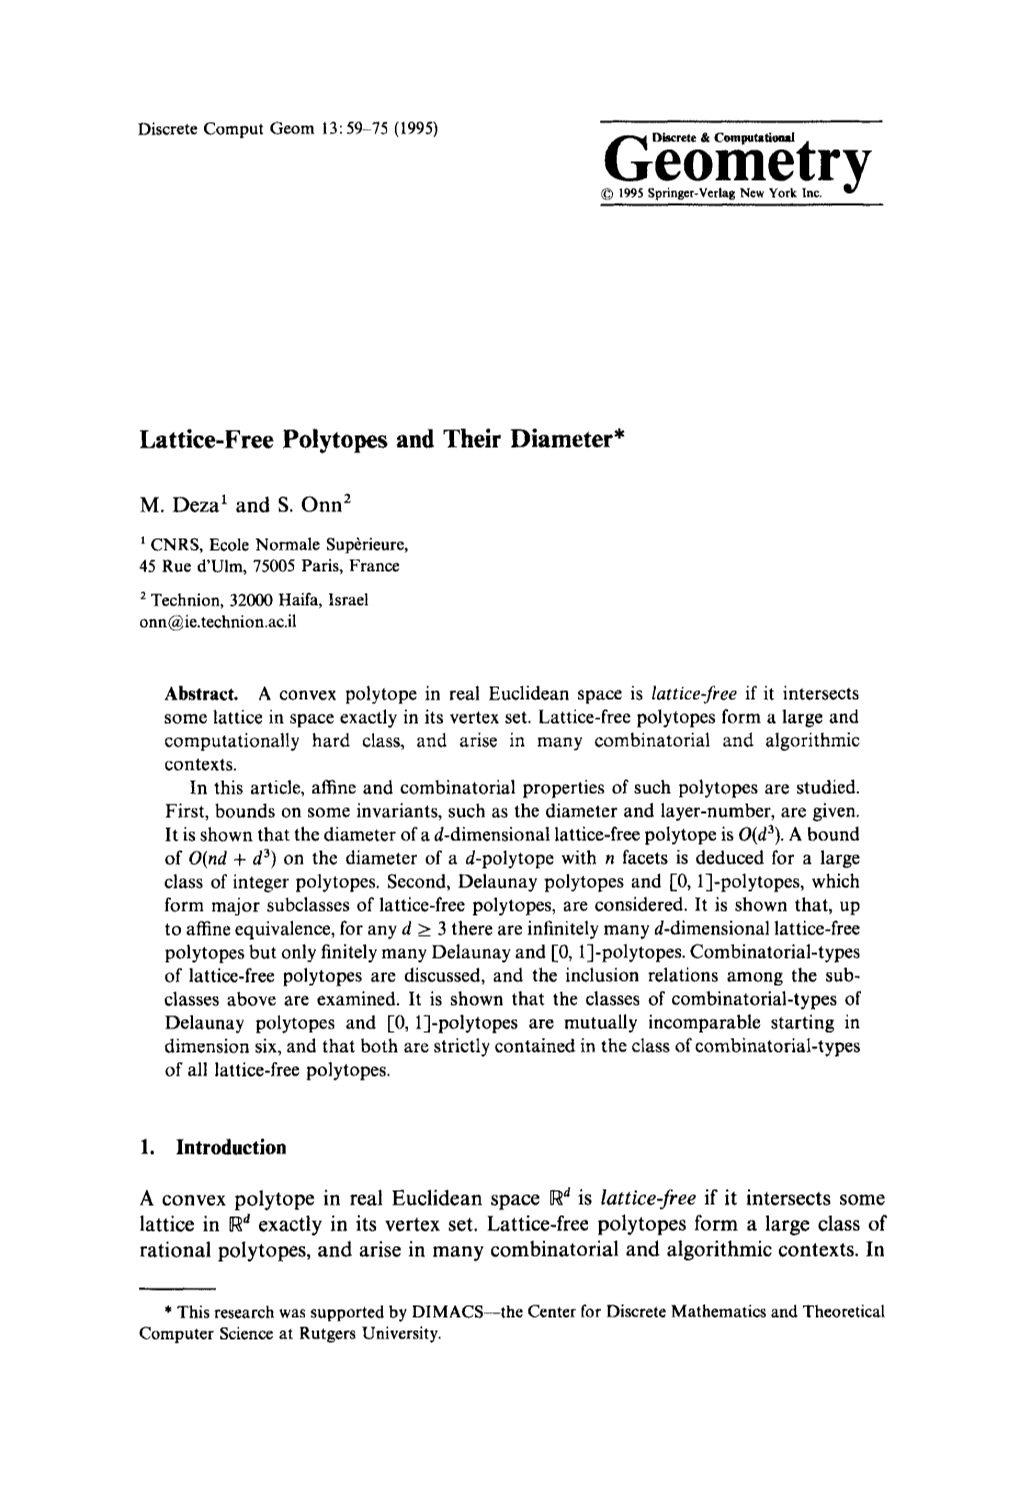 Lattice-Free Polytopes and Their Diameter*